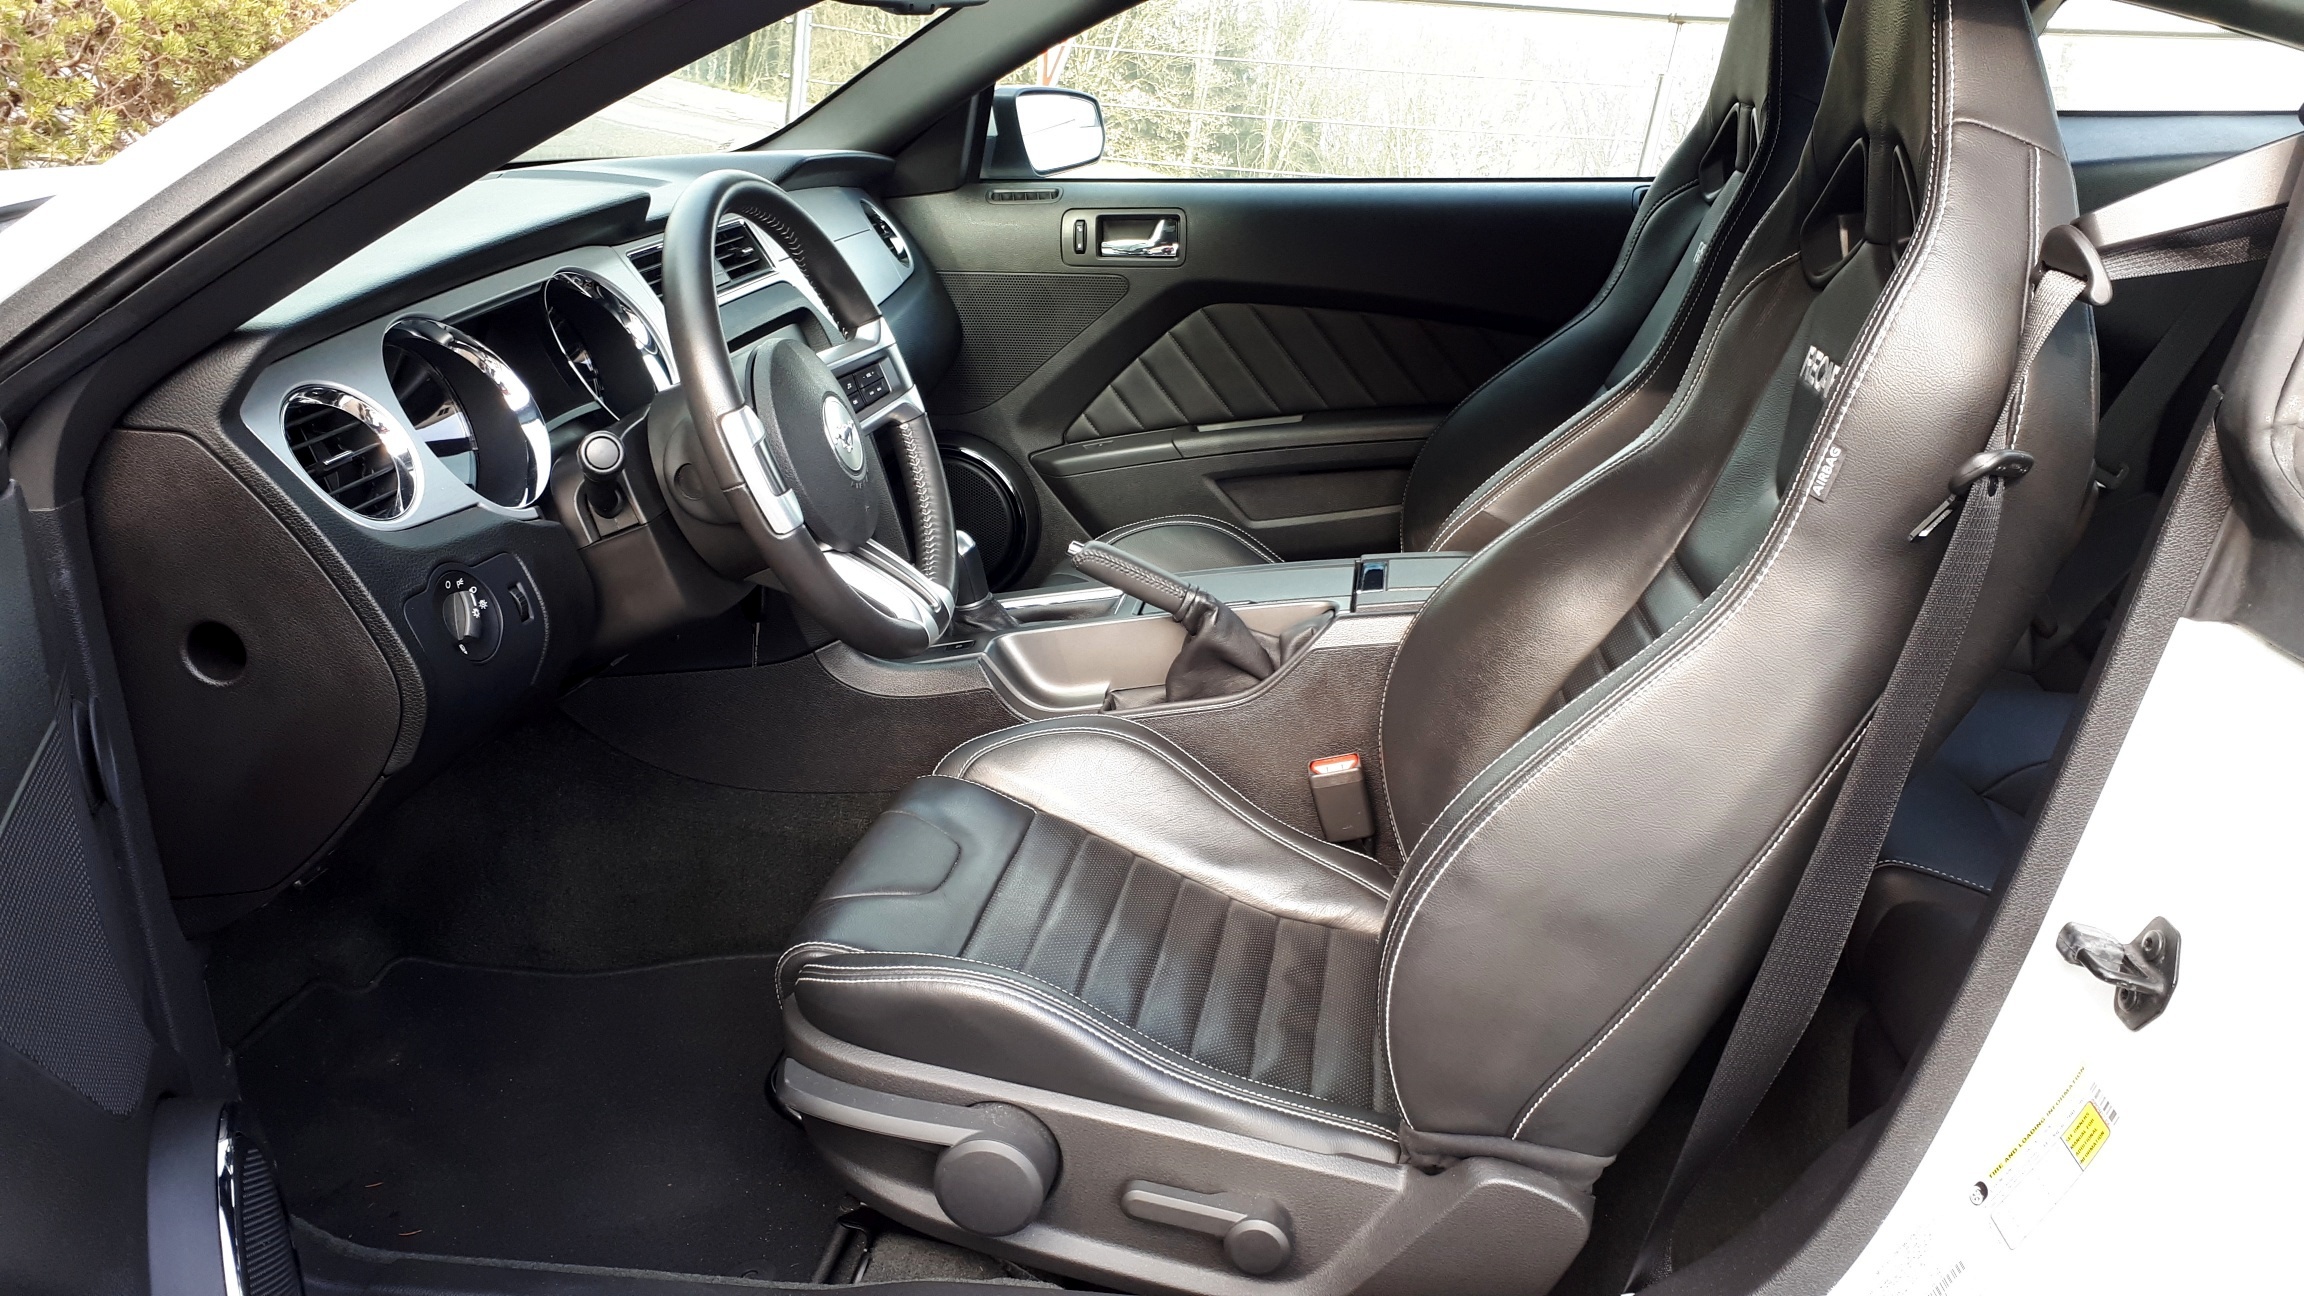 Mustang GT 13 ex Bachofner interior Recaro